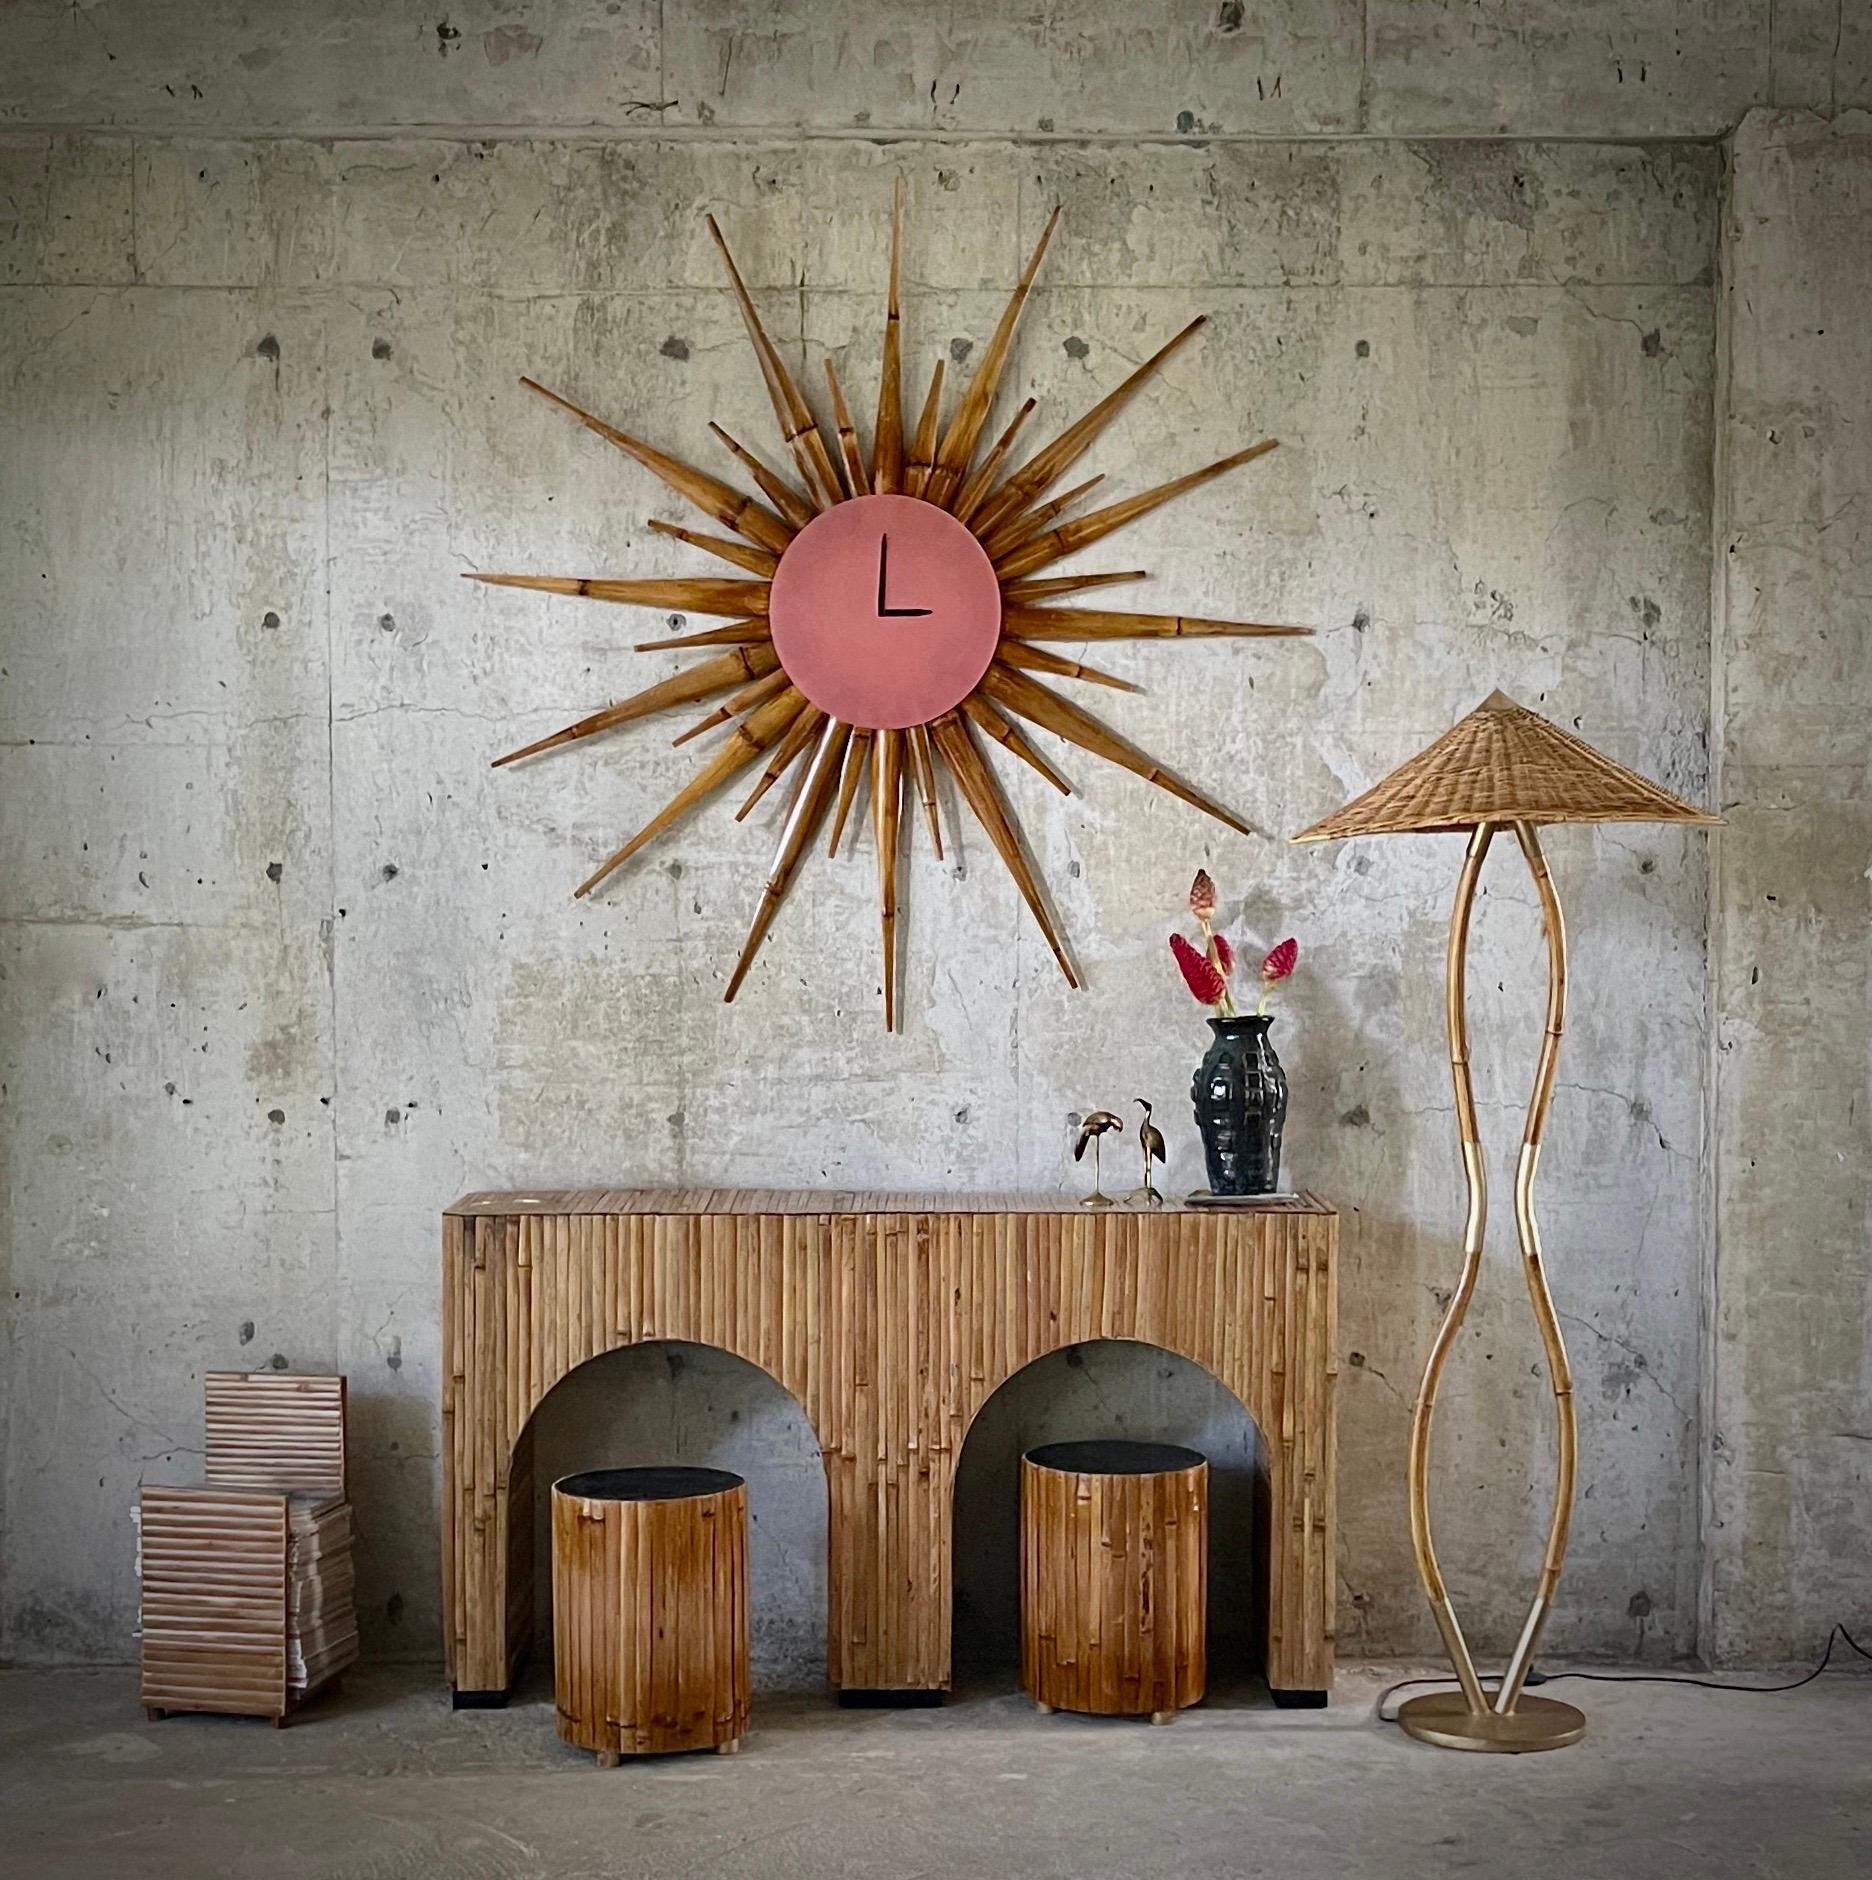  Nous avons créé un fabuleux Sunburst
horloge ensoleillée de style moderne du milieu du siècle. Son A
version bambou doré avec une texture étonnante
présence. Cette pièce peut être
murale ou appuyée sur le sol, très
une pièce d'ancrage pour une